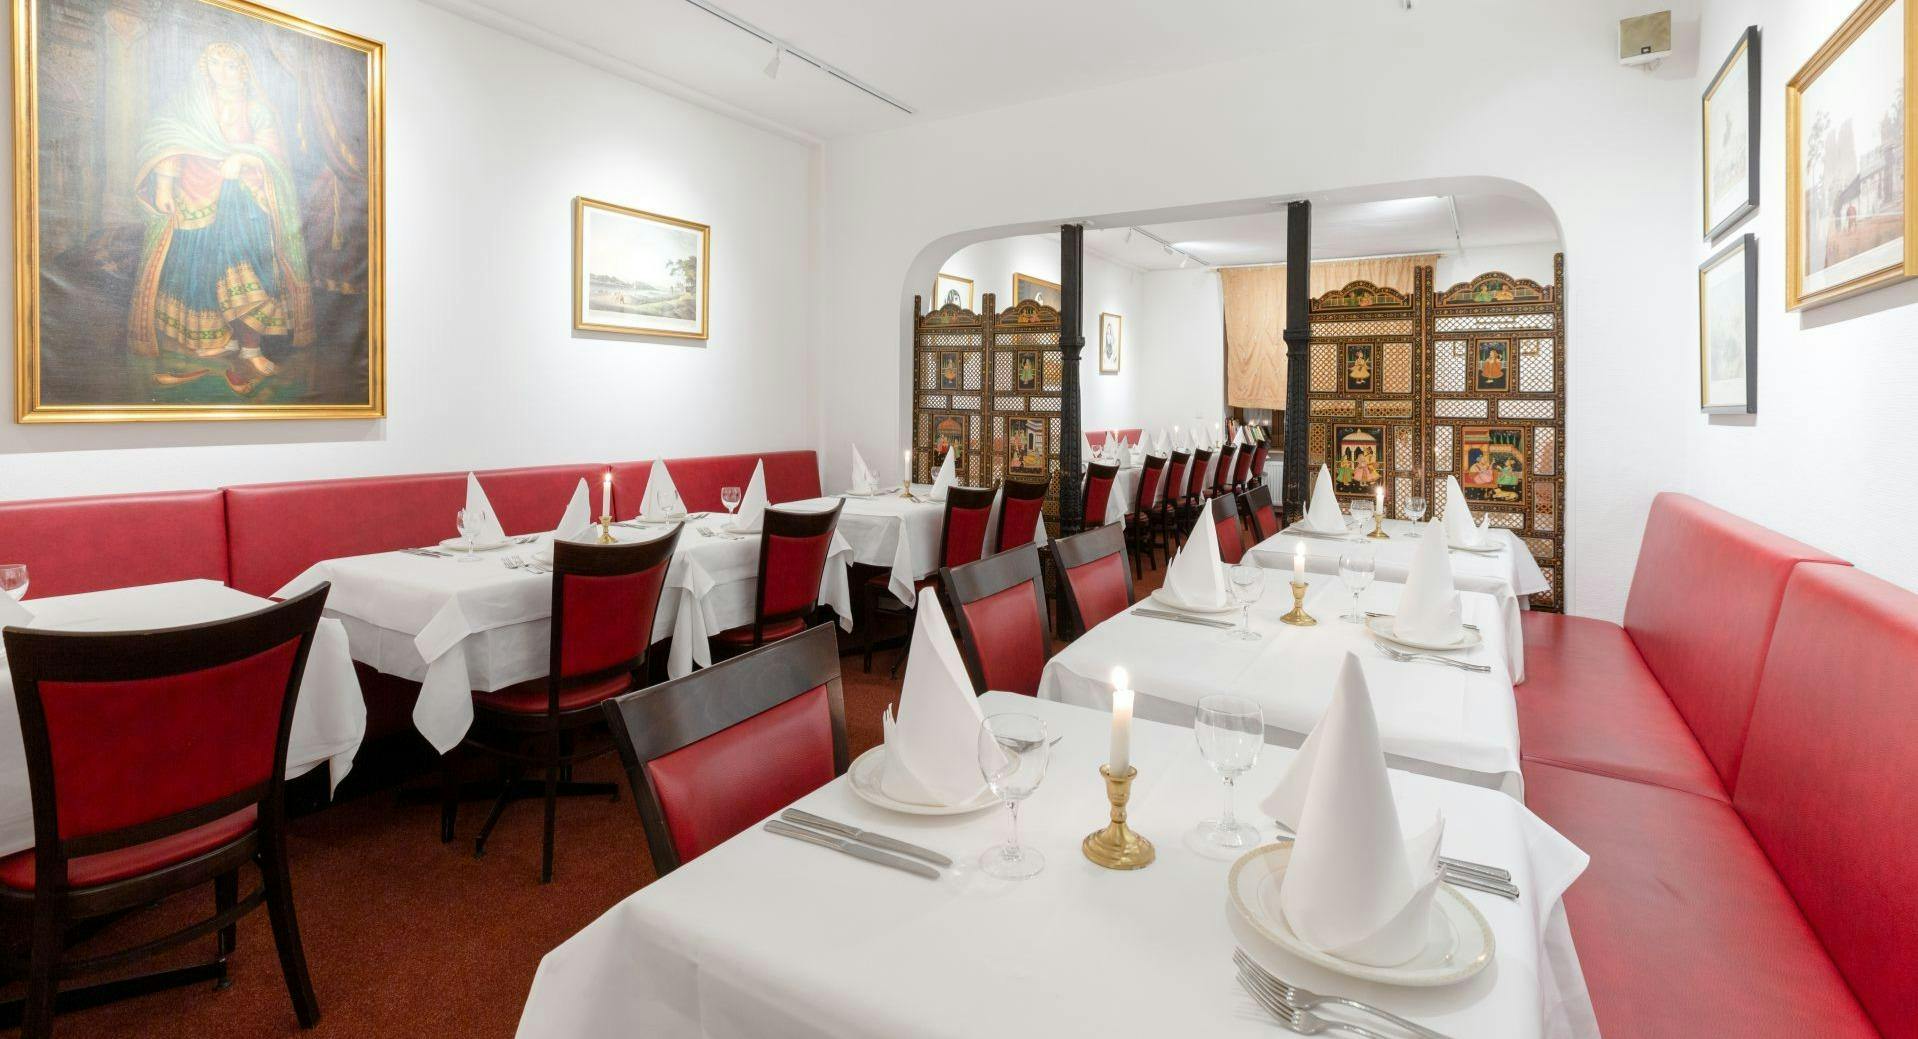 Bilder von Restaurant Jewel of India in Westend, Frankfurt